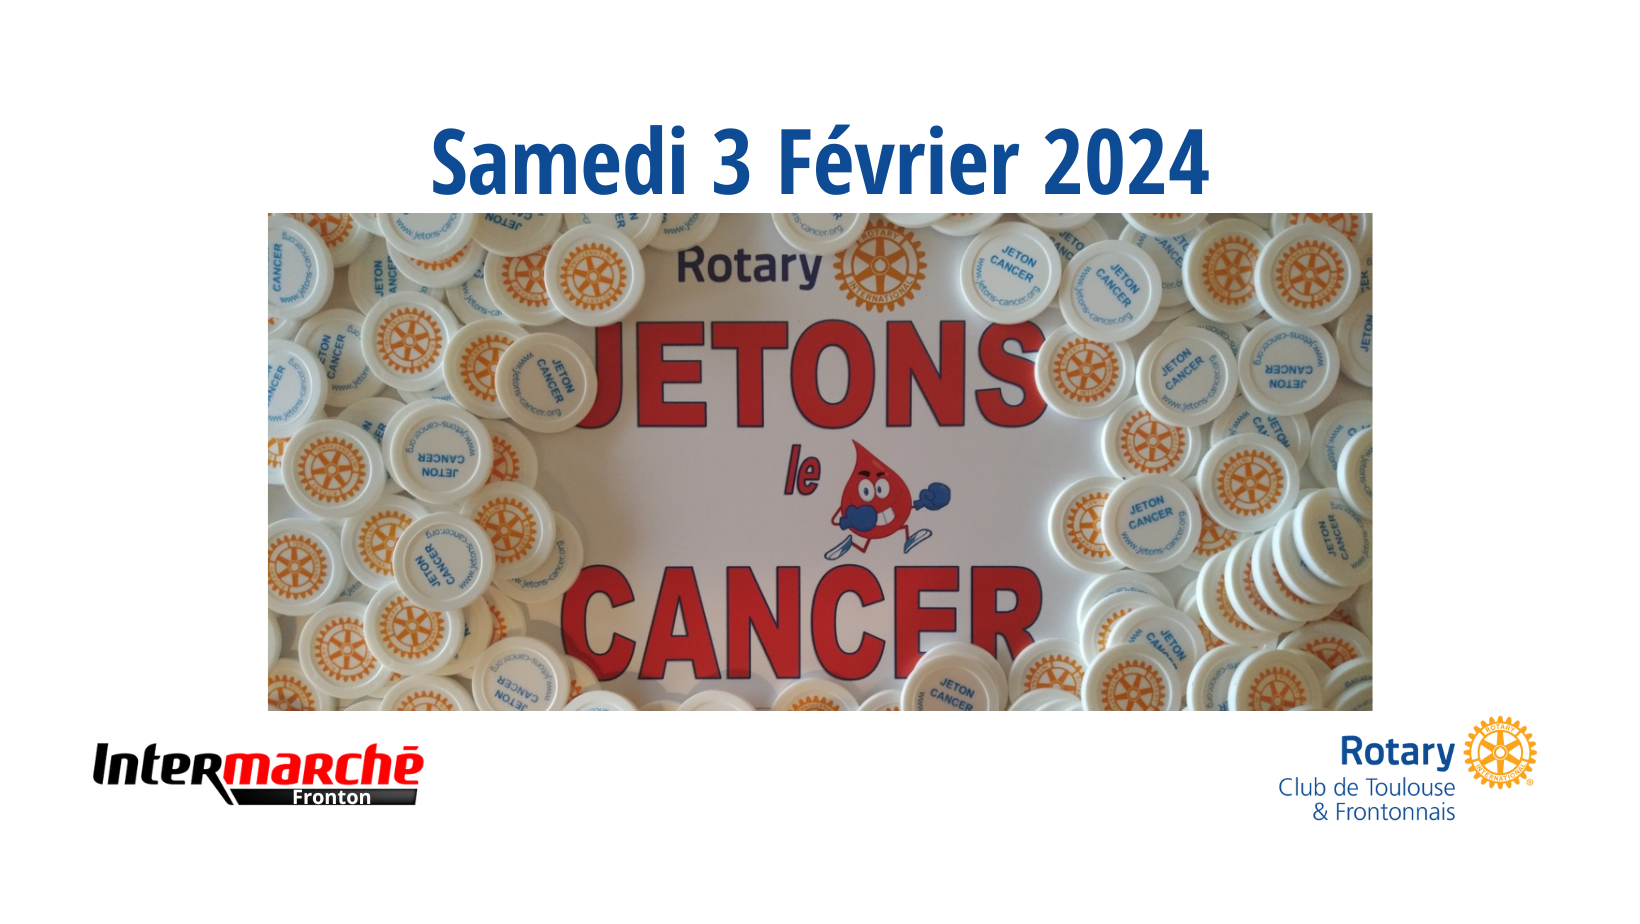 Le Rotary Club de Toulouse et Frontonnais sera présent le Samedi 3 Février 2024 à l'Intermarché de Fronton pour vendre de jetons de caddies afin de récolter des fonds pour la recherche contre le cancer.